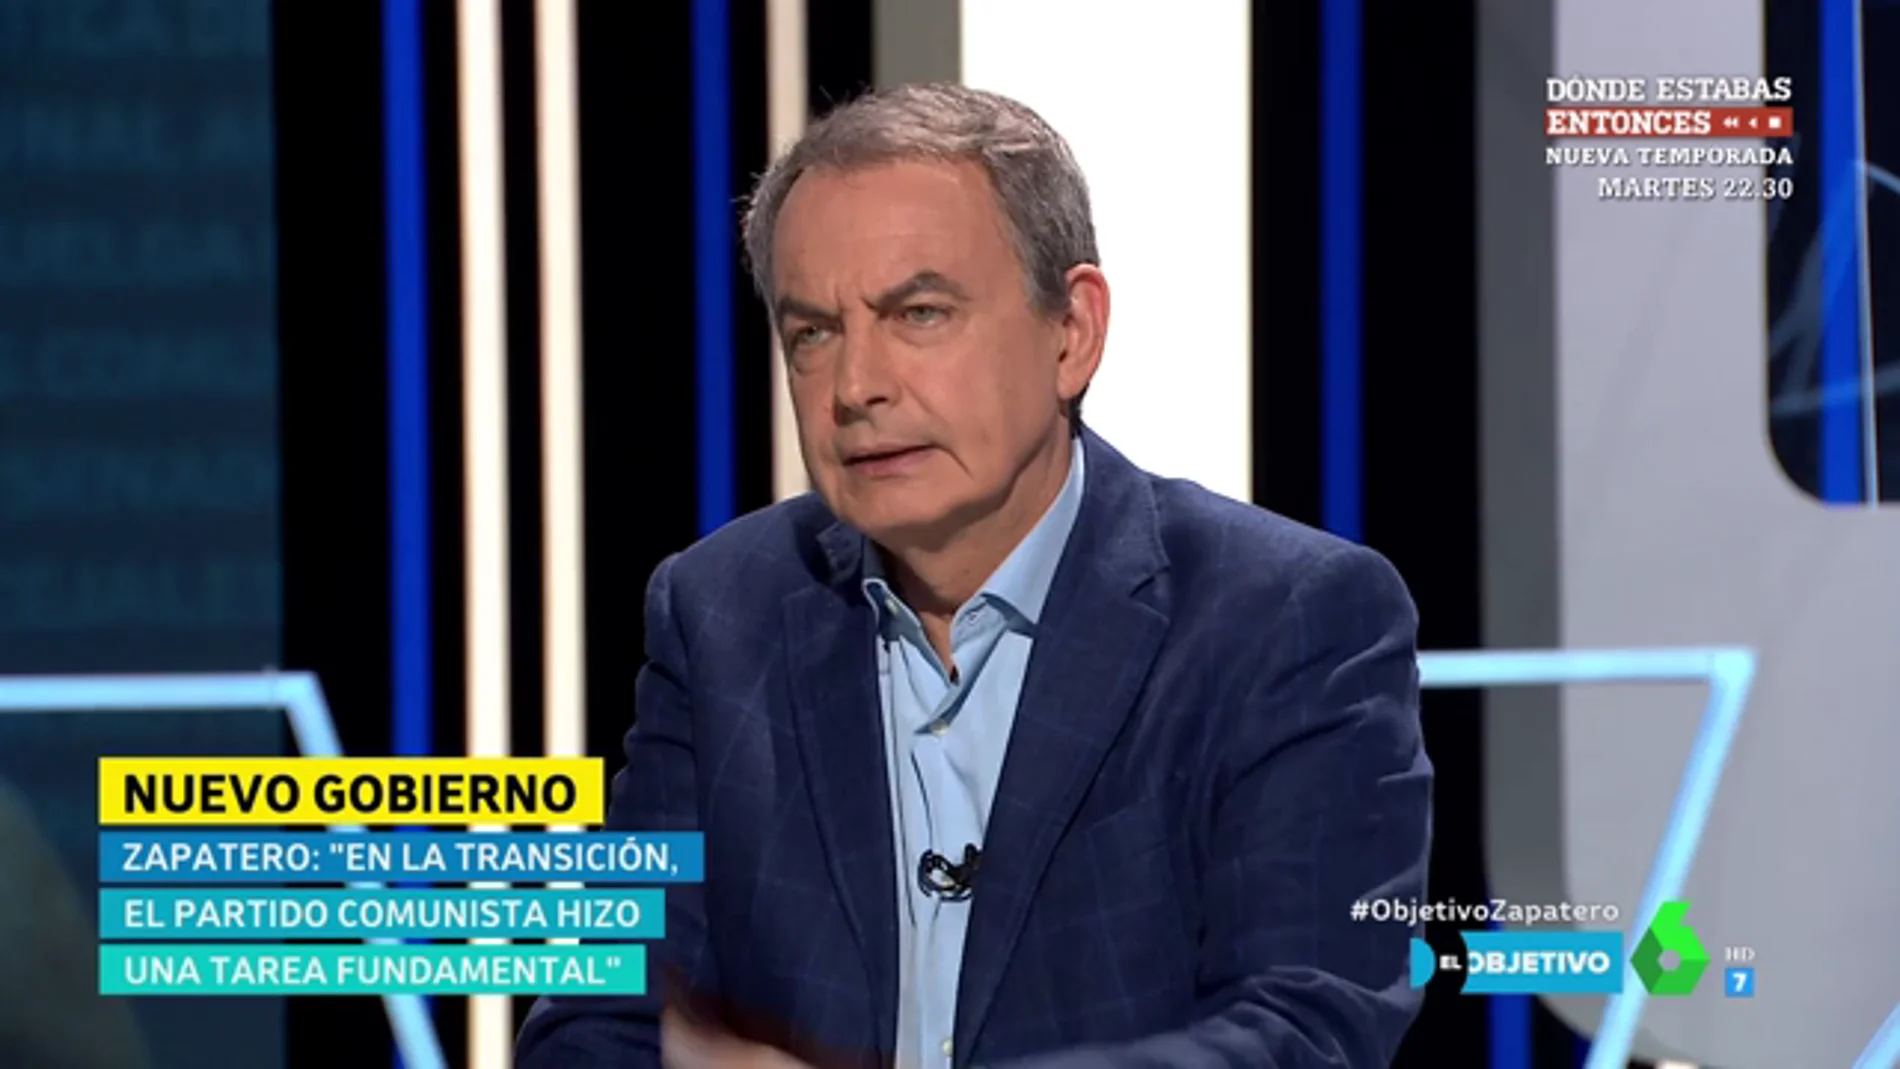 Zapatero: "El mensaje de 'vuelven los comunistas' me preocupa, hicieron una labor fundamental en la Transición"